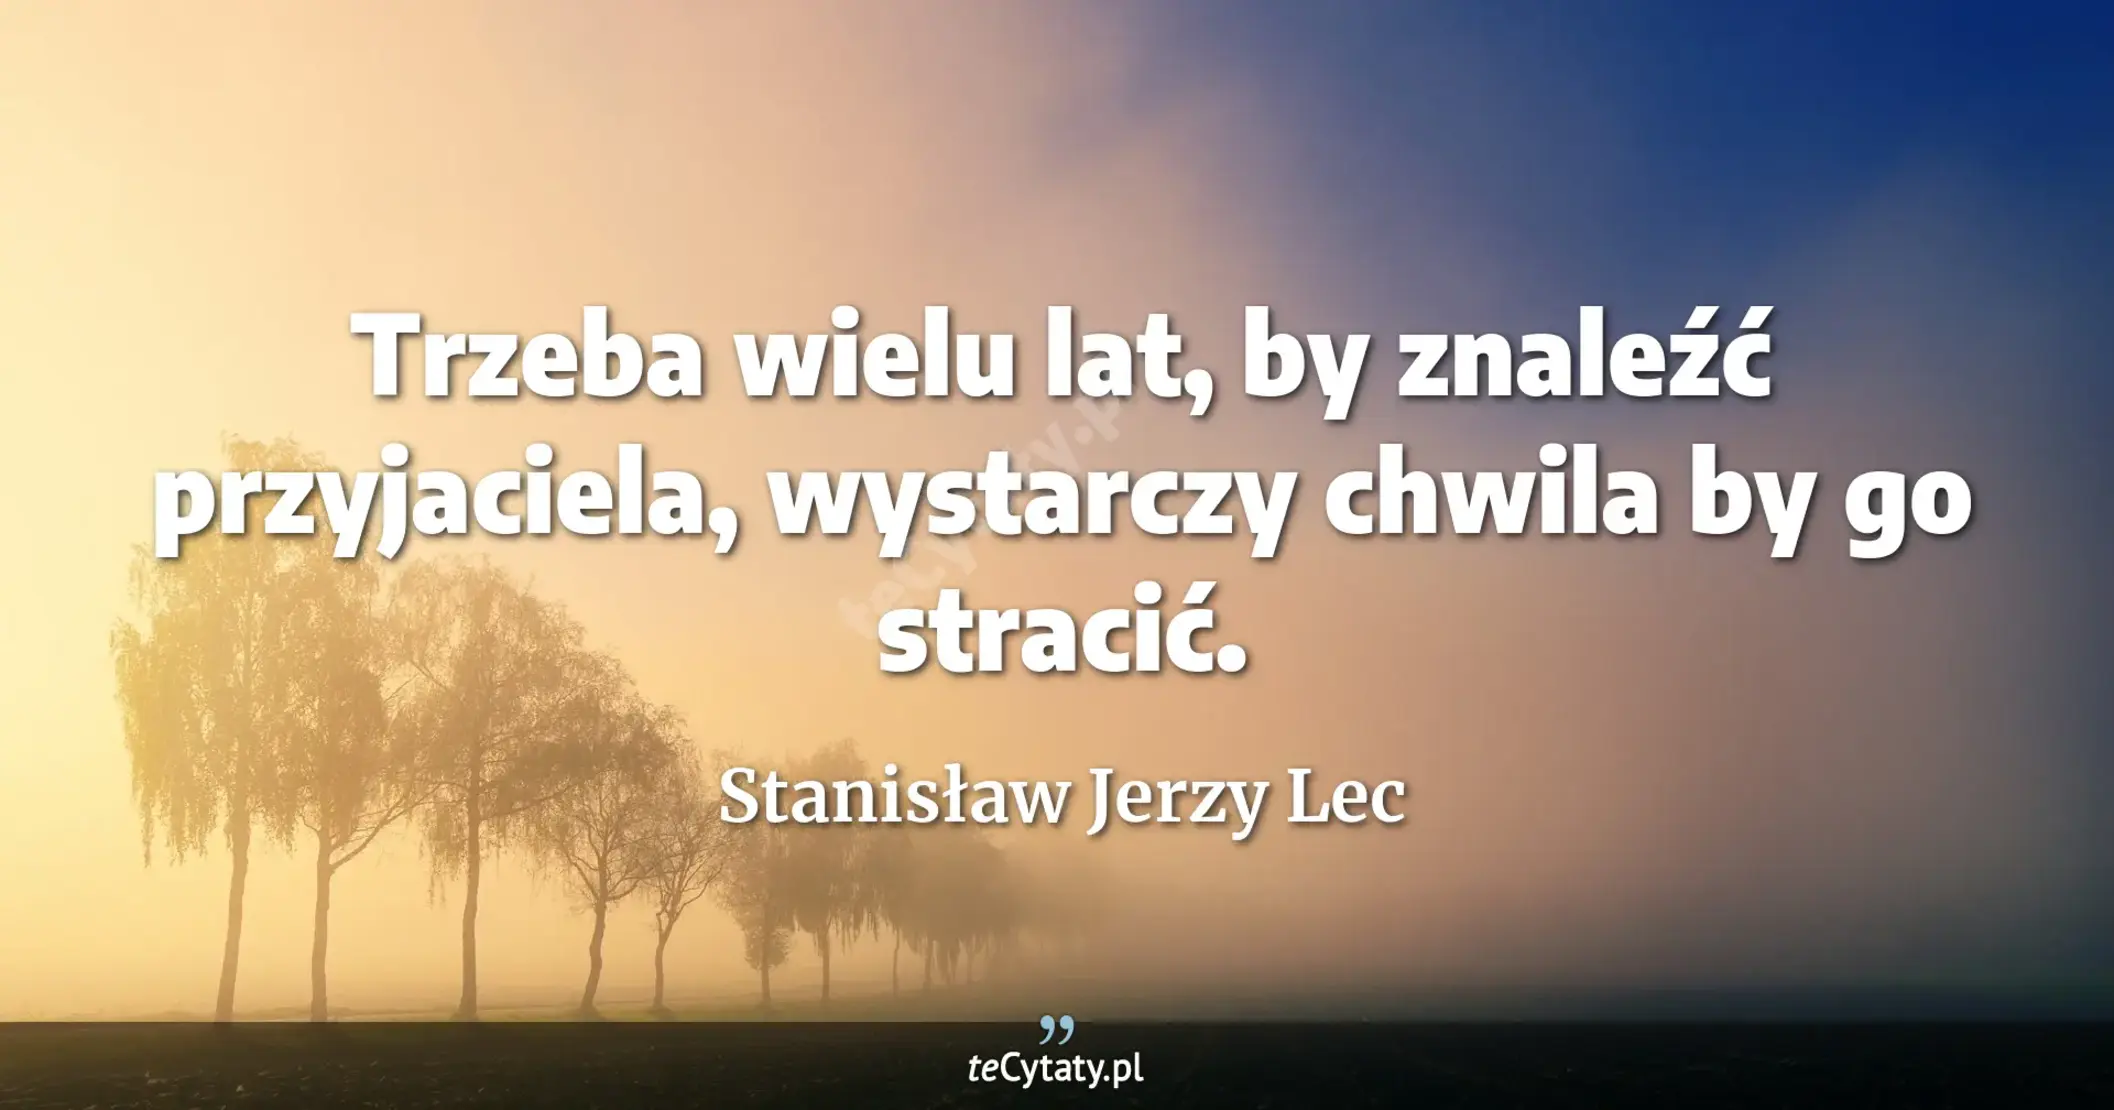 Trzeba wielu lat, by znaleźć przyjaciela, wystarczy chwila by go stracić. - Stanisław Jerzy Lec